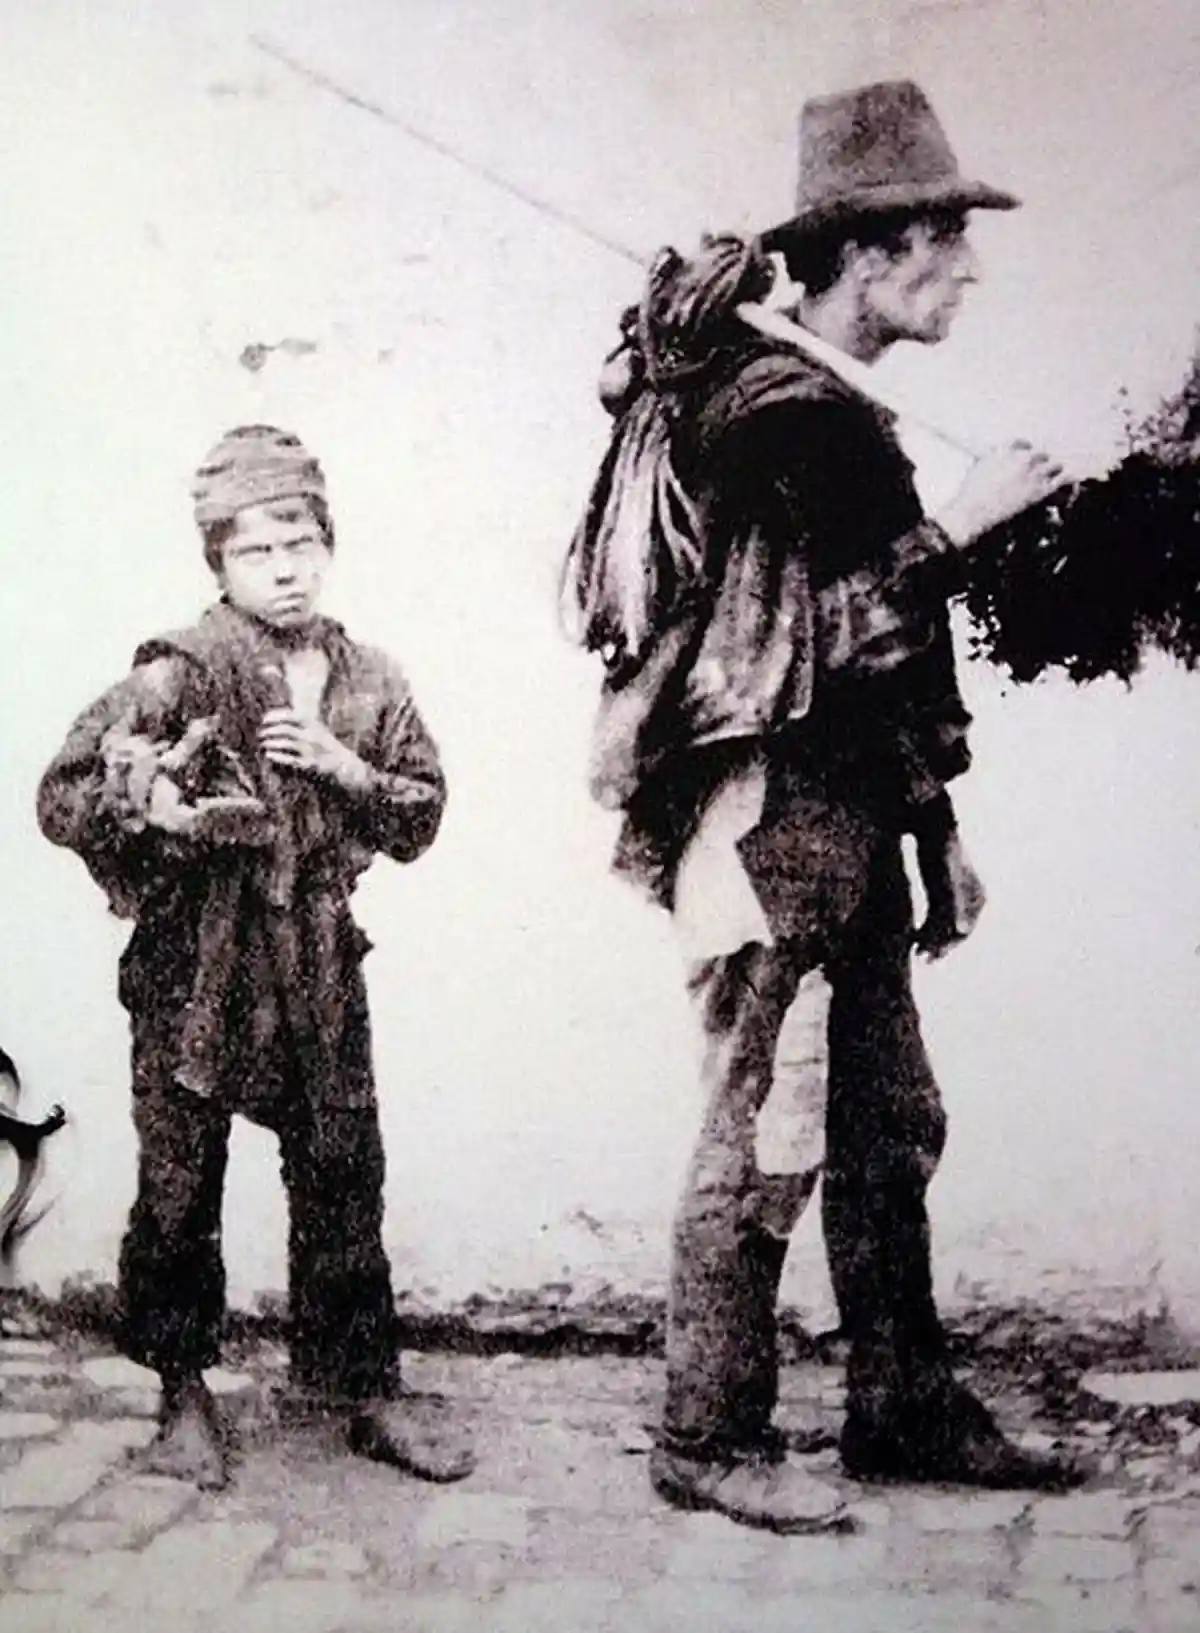 Нынешние трубочисты это совсем не 12-летние мальчишки, как было в 19-м веке. Gala G / flickr.com